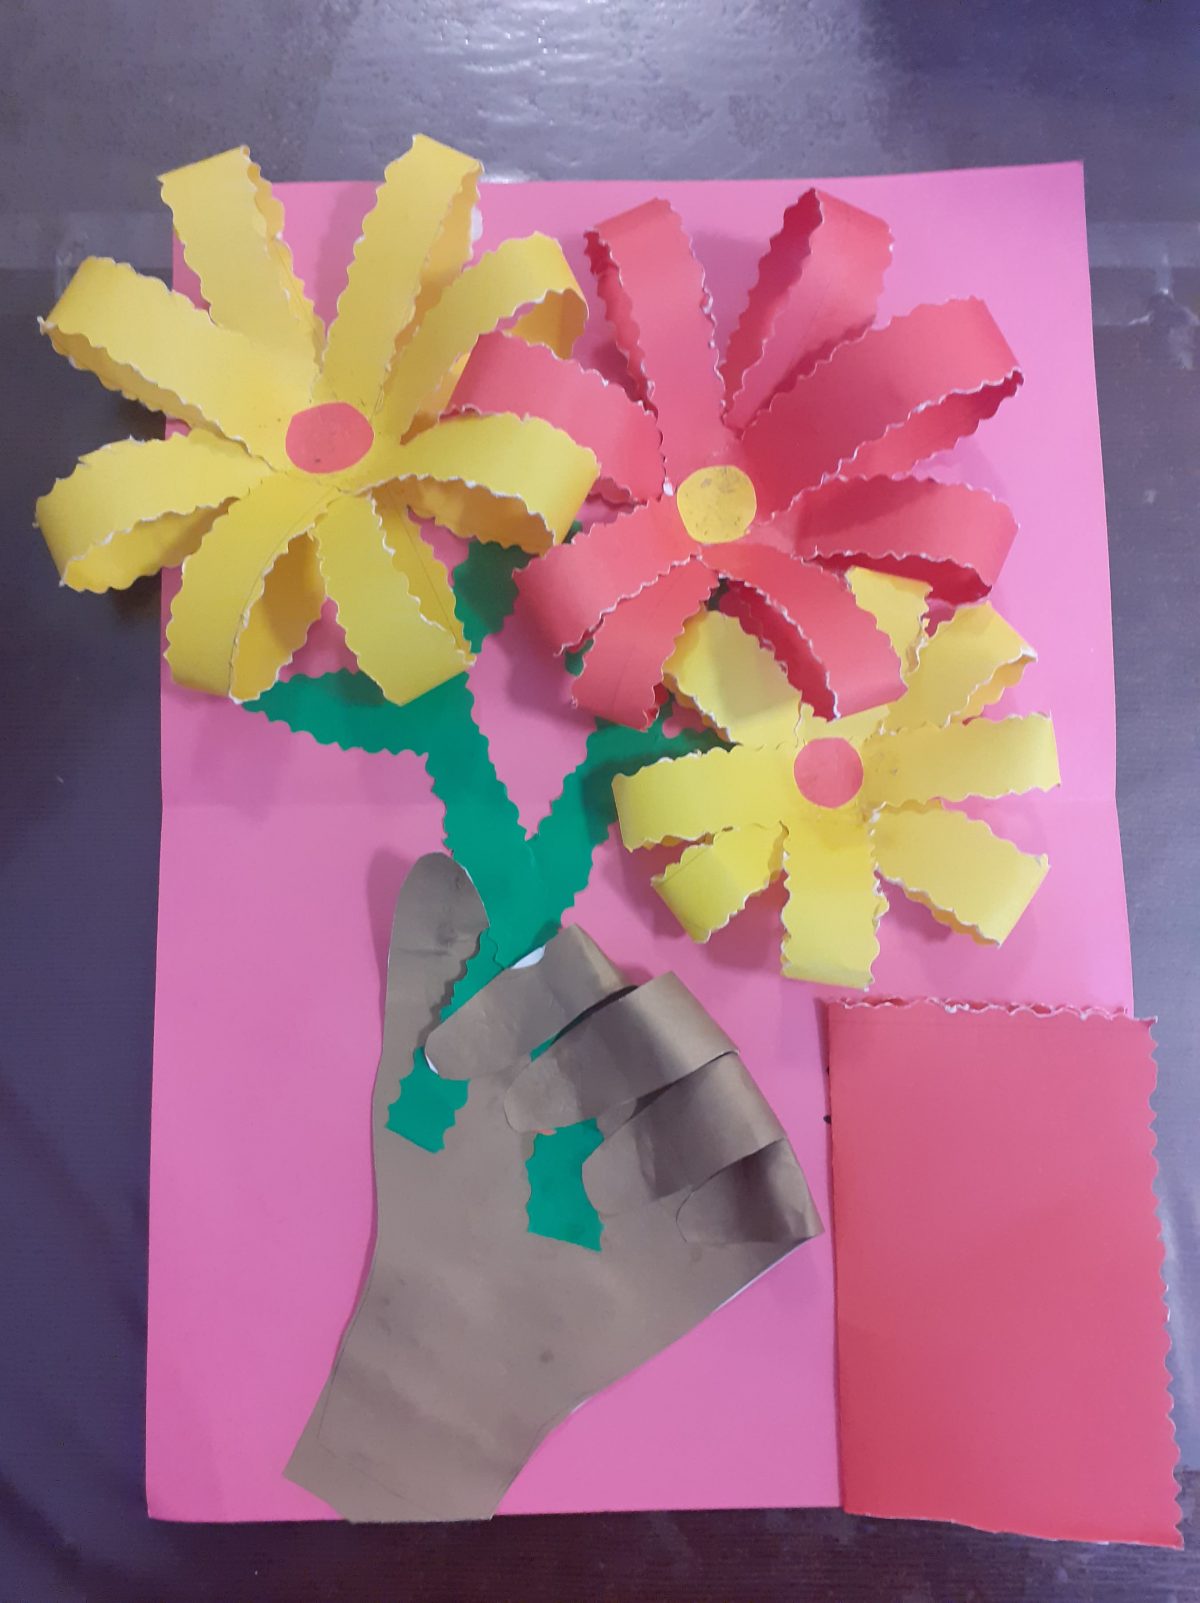 na rozowy tle ręka trzymająca 3 kwiaty - platki zewnętrznych kwiatow maja kolor żółty z różowym środkiem i czerwony na środku, z prawej na dole, kartka z ukrytym napisem dla mamy